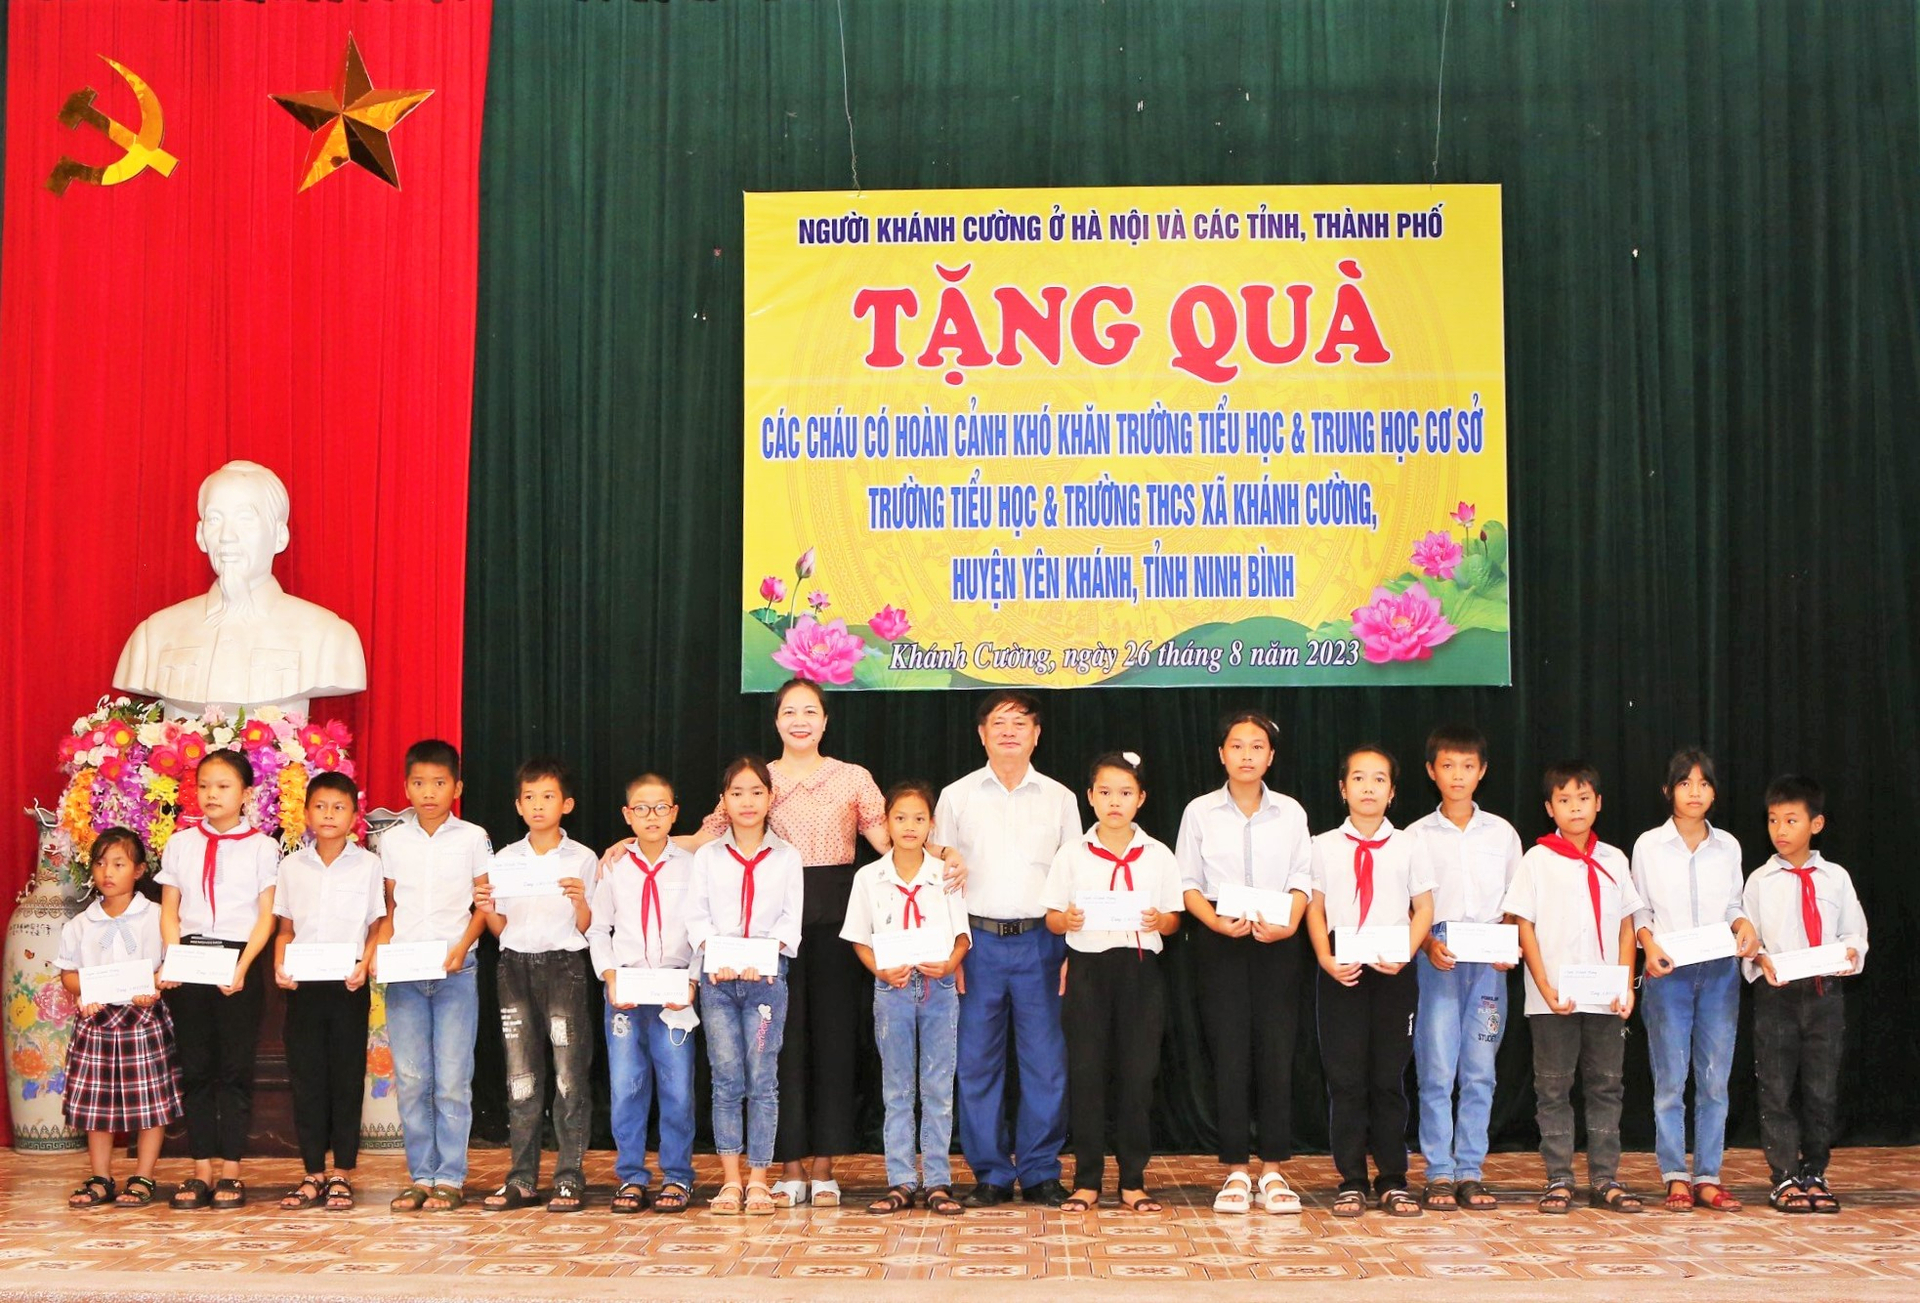 Hội người Khánh Cường, huyện Yên Khánh, Ninh Bình trao tặng các suất quà với tổng giá trị hơn 176 triệu đồng cho các em học sinh có hoàn cảnh khó khăn và các nhà trường trên địa bàn xã Khánh Cường.